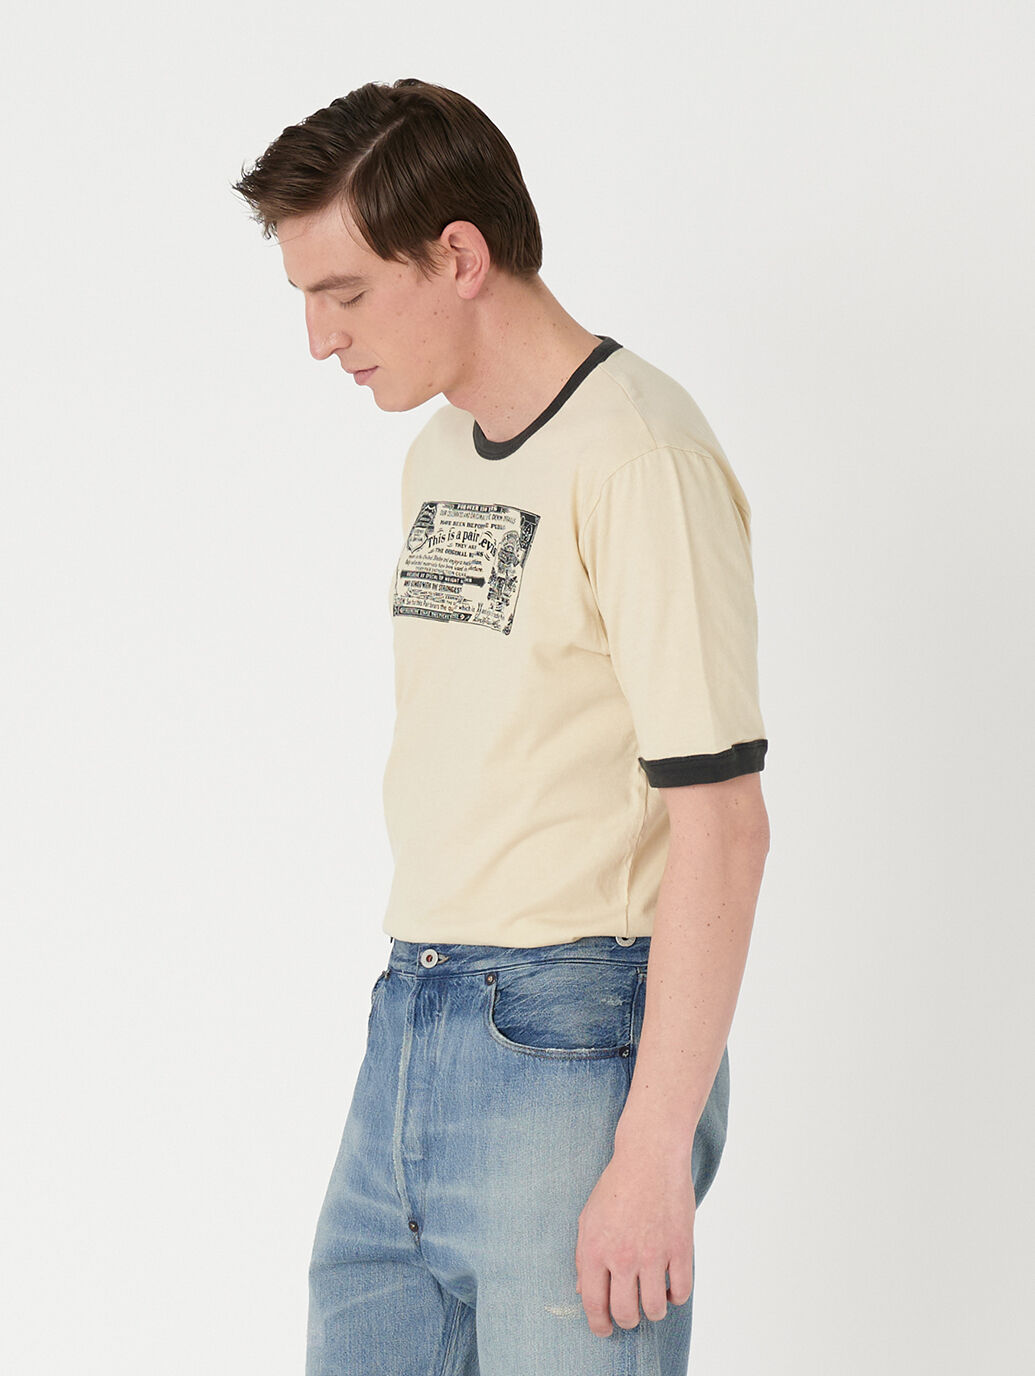 総合通販 LEVIS® VINTAGE CLOTHING 1970S リンガーTシャツ Tシャツ